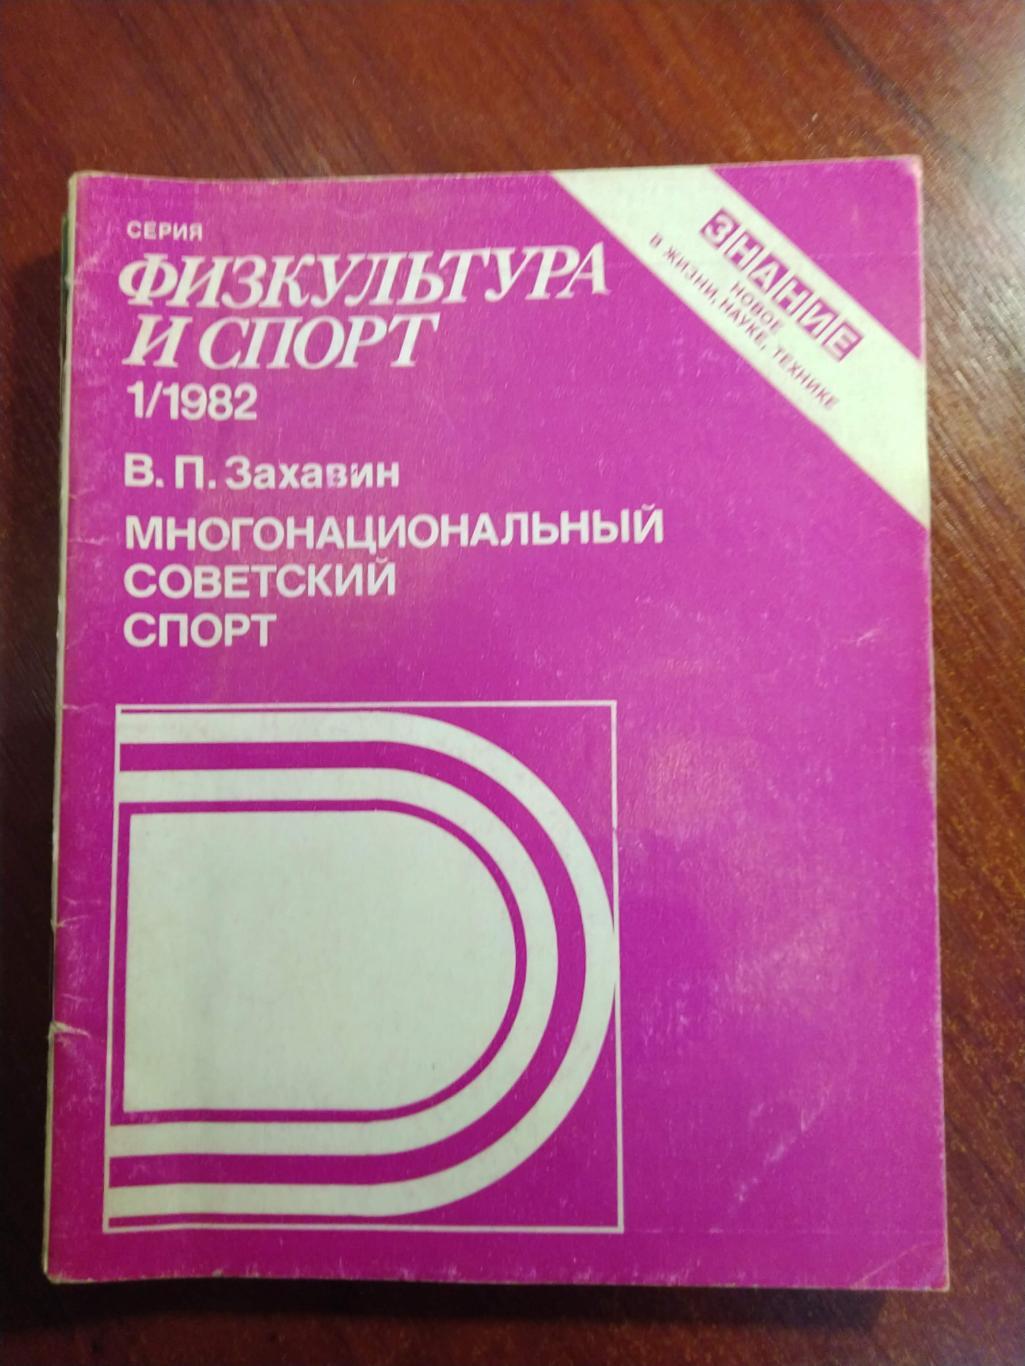 Серия Физкультура и спорт 1982 №1 Многонациональный советский спорт